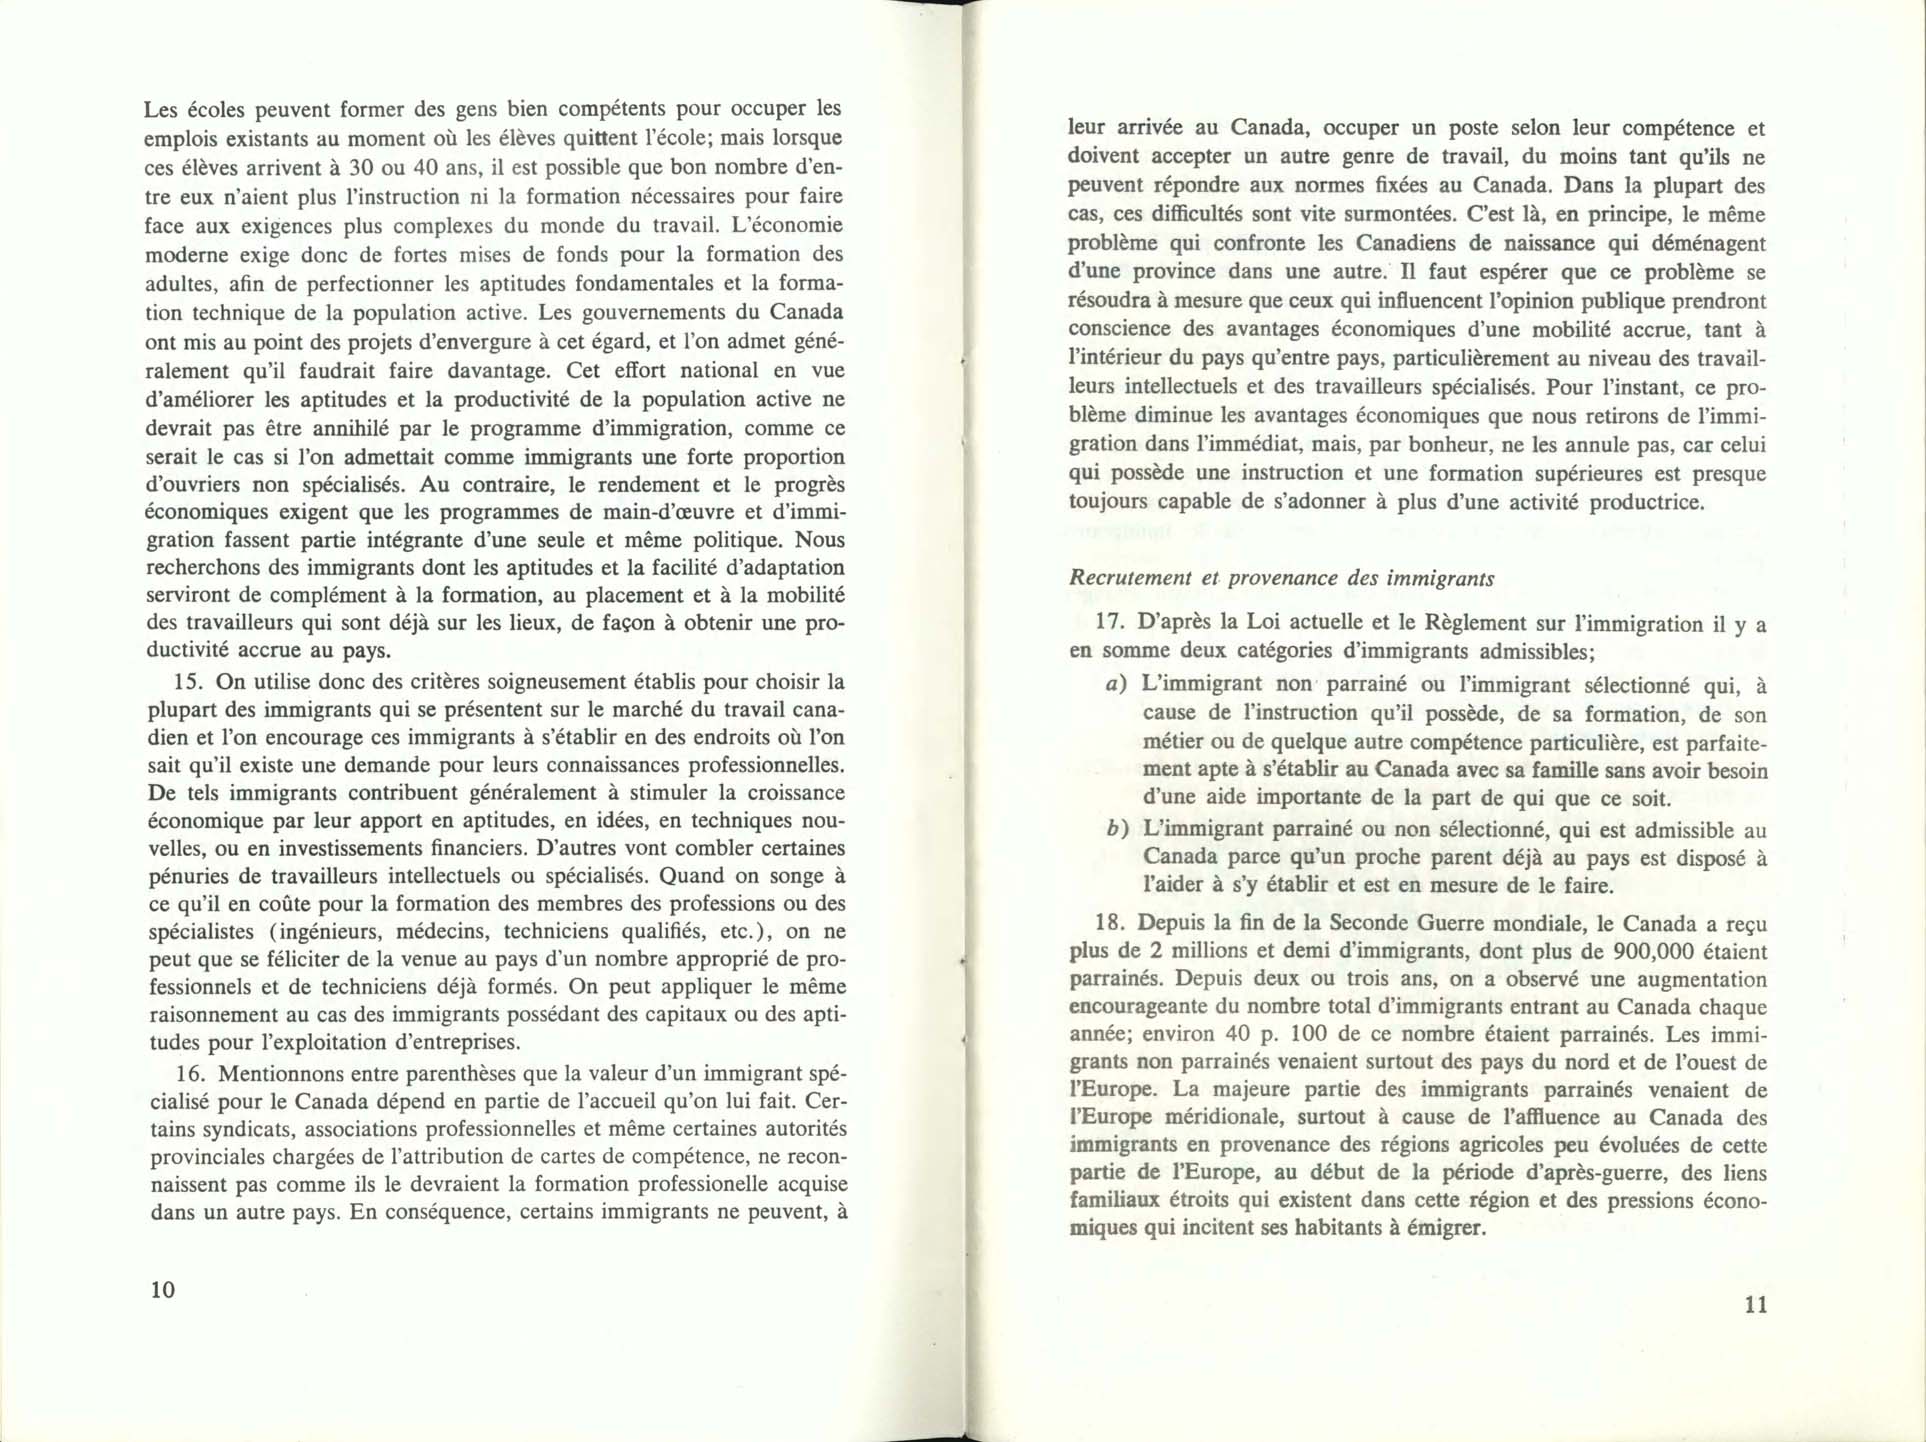 Page 10, 11 Livre Blanc sur l’immigration, 1966